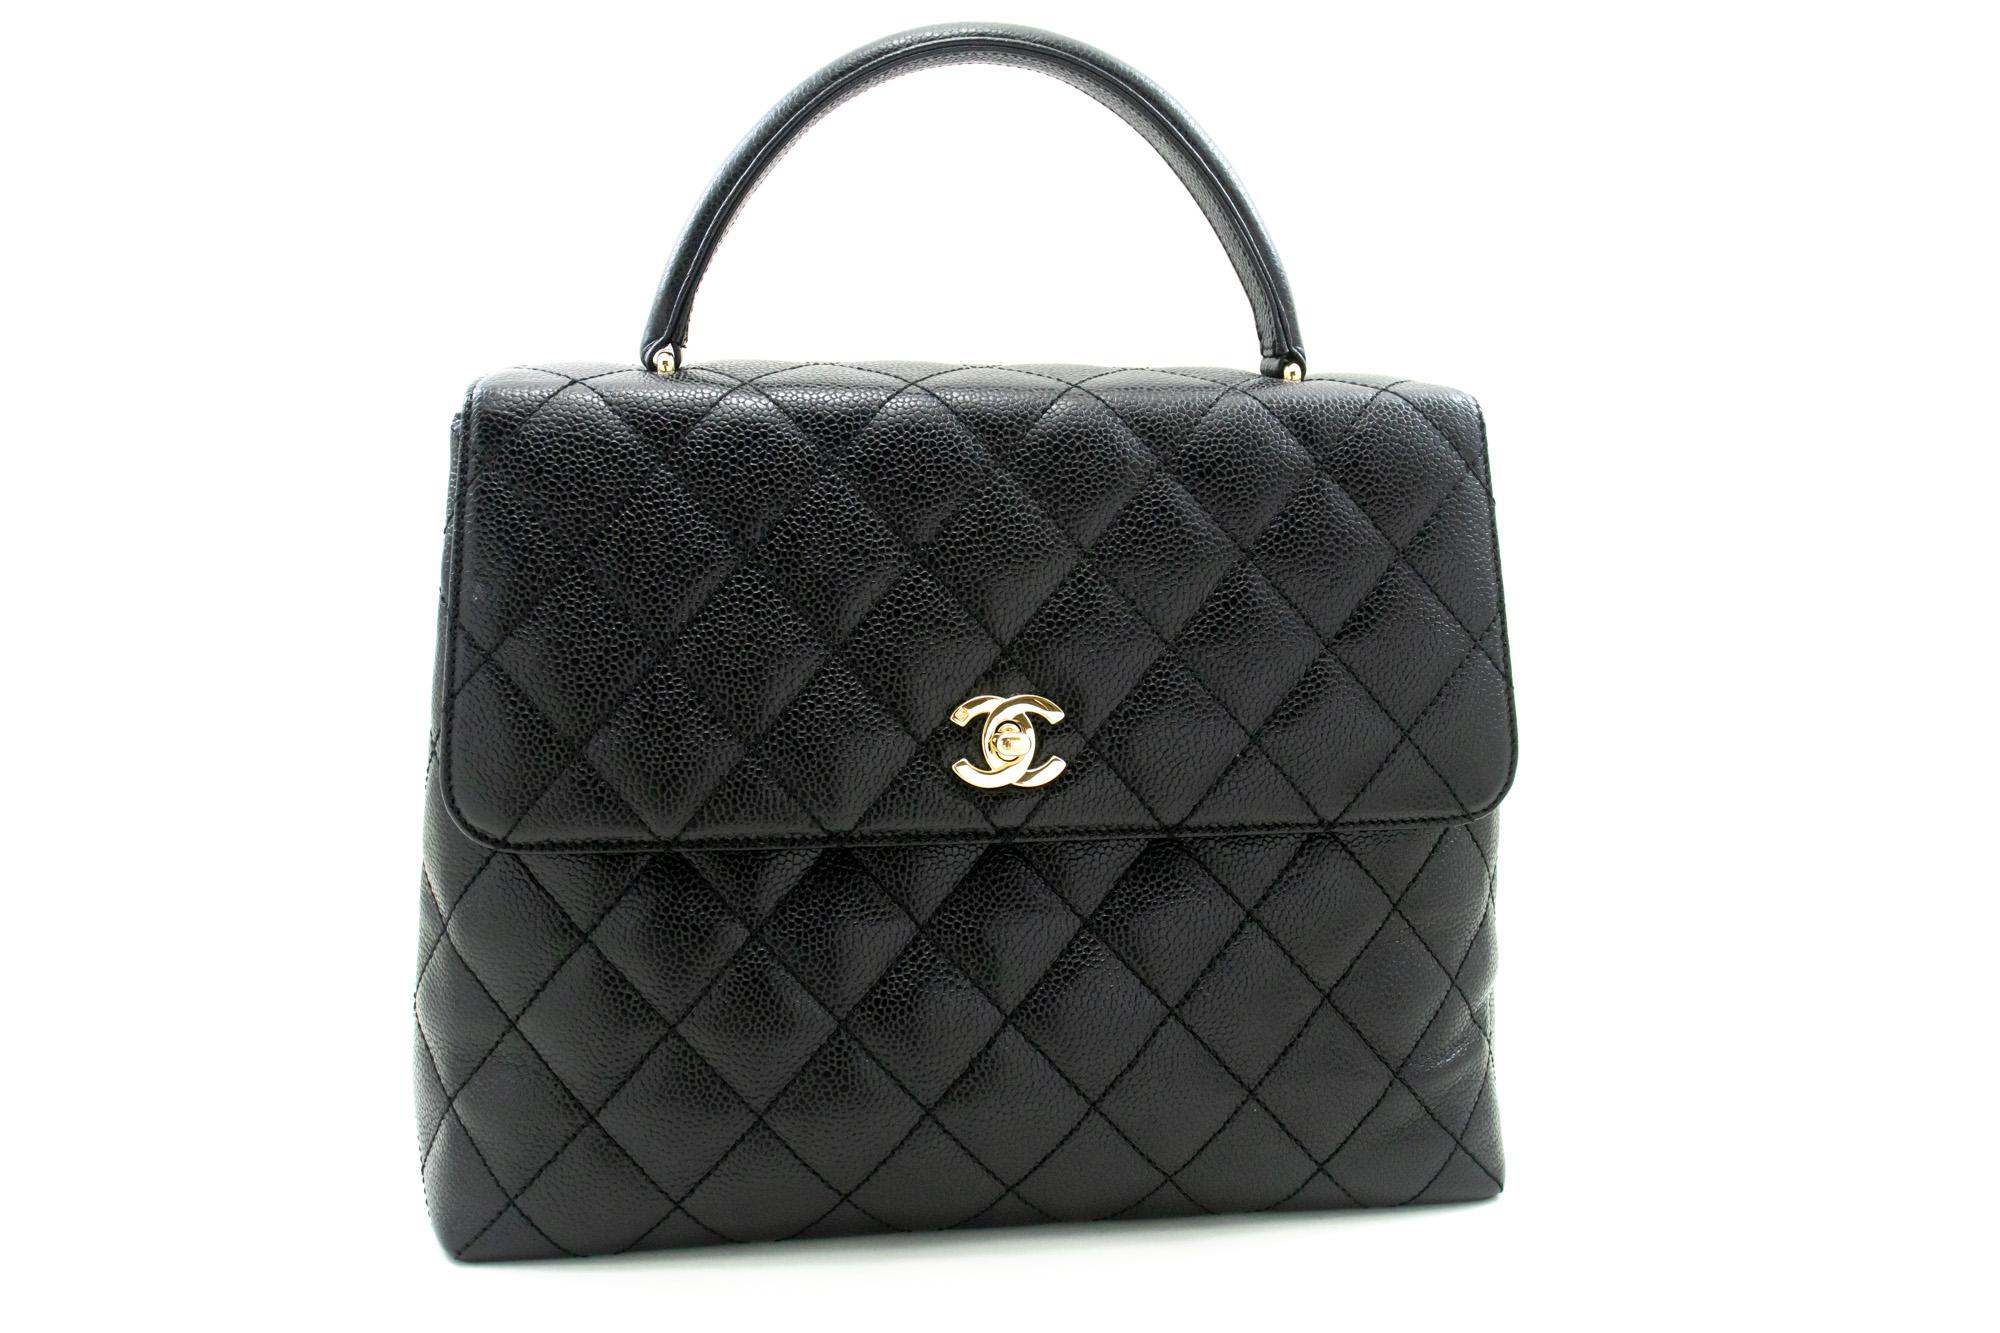 Un authentique sac à main CHANEL Caviar Top Handle Bag Kelly Black Flap Leather Gold. La couleur est noire. Le matériau extérieur est le cuir. Le motif est solide. Cet article est un Vintage / Classique. L'année de fabrication serait 2 0 0 2